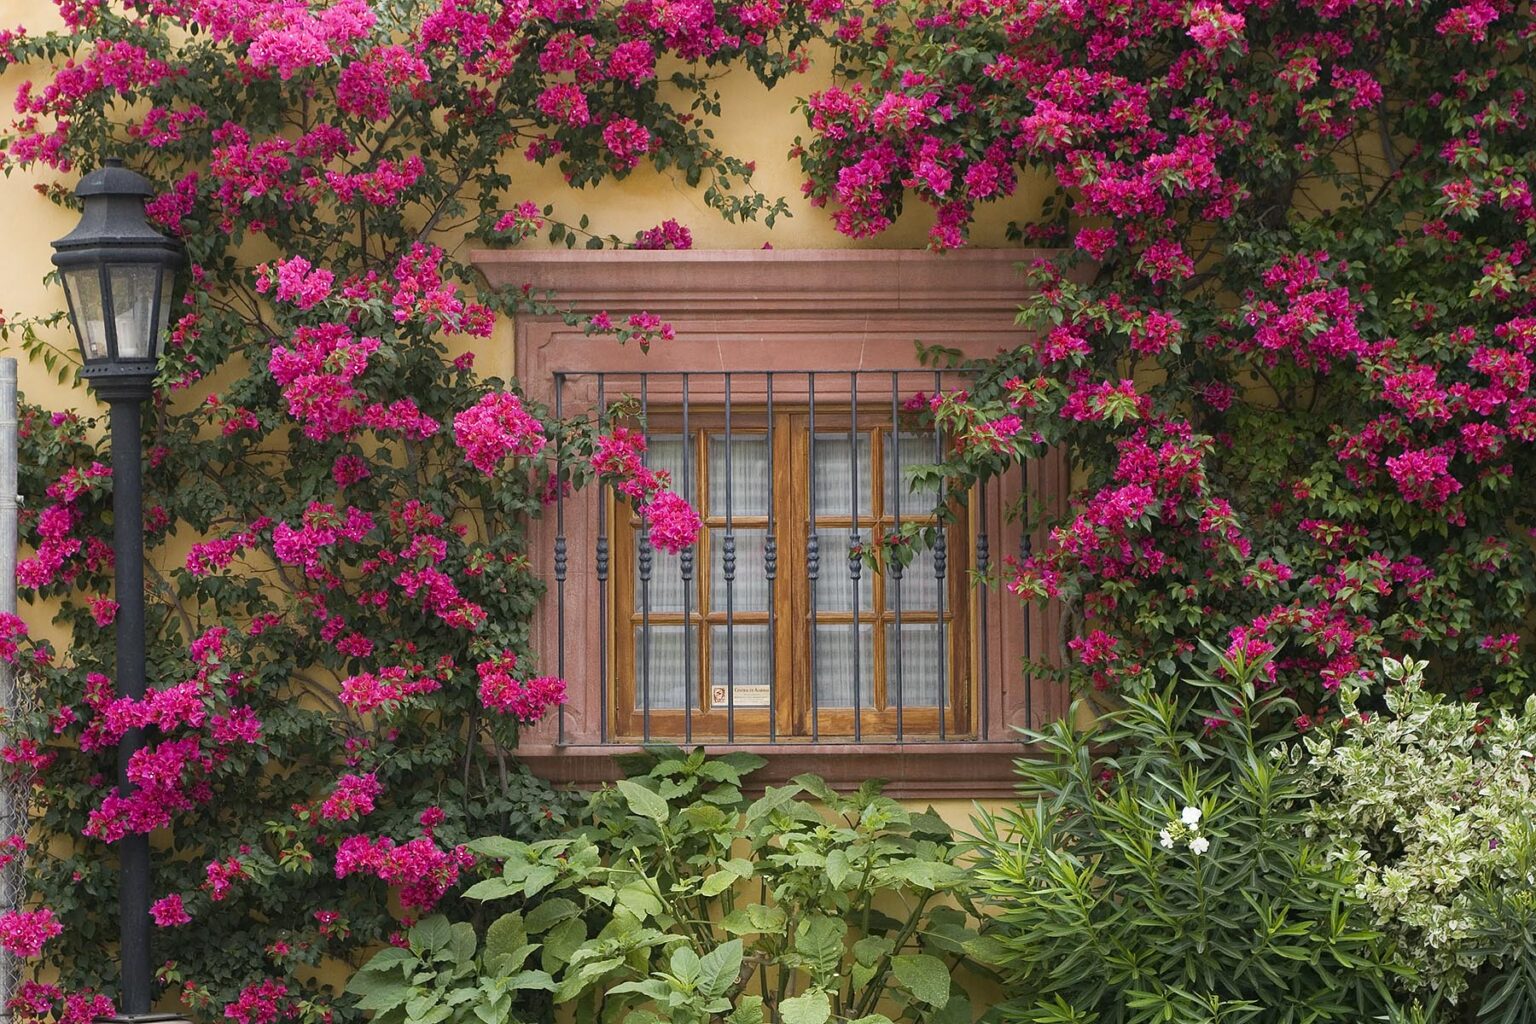 Bougainvillea grows around a window in SAN MIGUEL DE ALLENDE - MEXICO